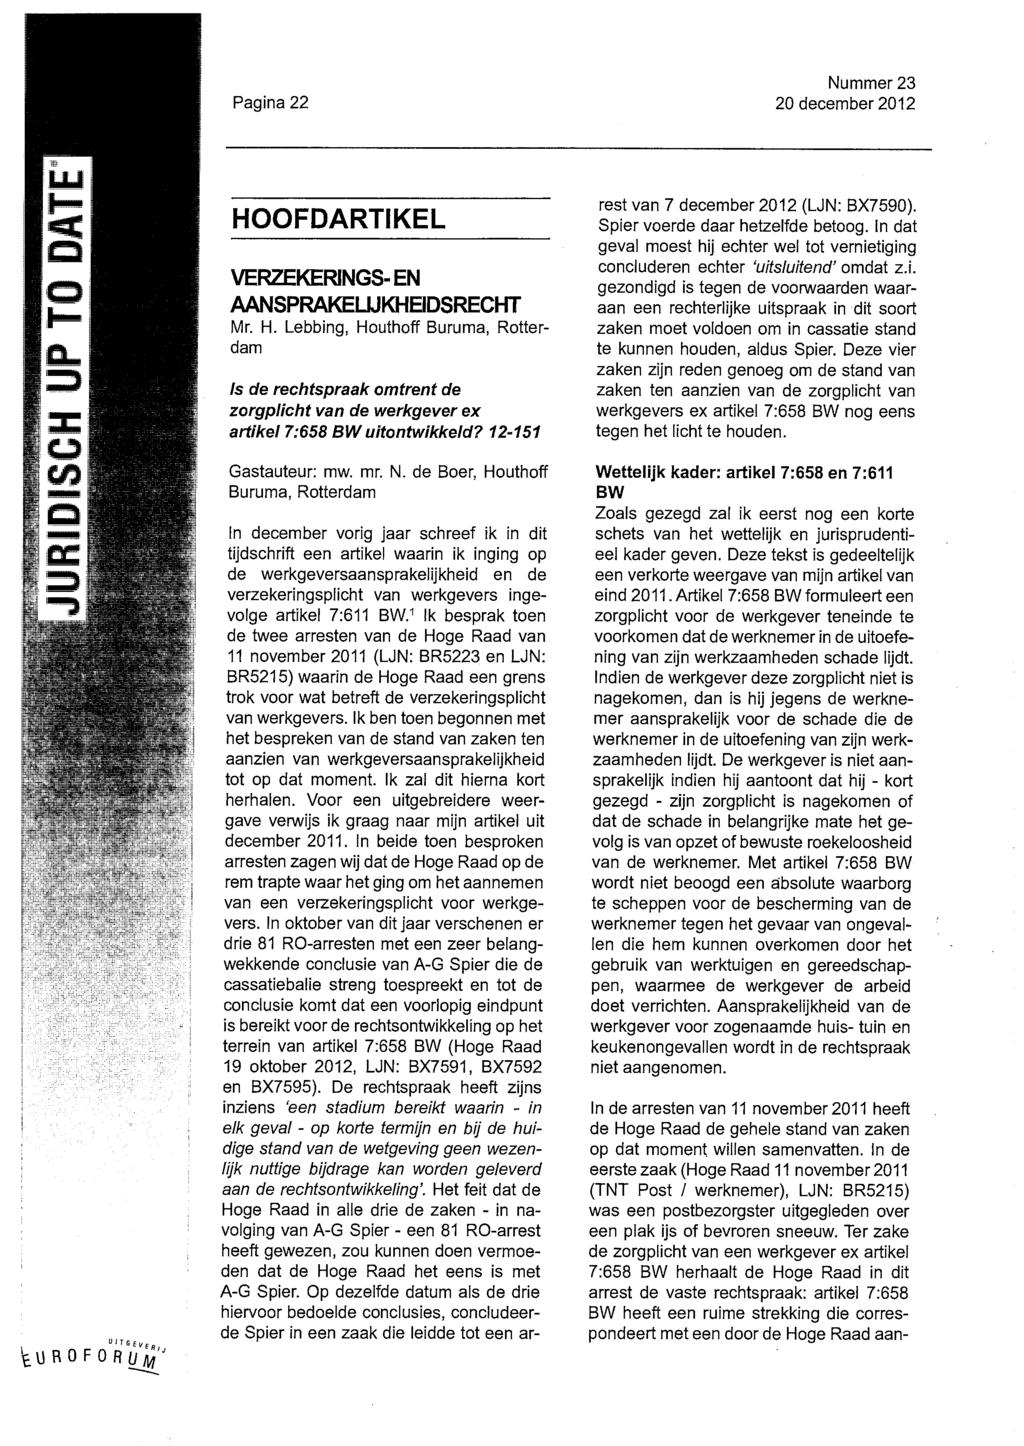 Pagina 22 Nummer 23 20 december 2012 HOOFDARTIKEL VERZEKERINGS^EN AANSPRAKEHJKHEIDSRECHT IVlr. H. Lebbing, Houthoff Buruma, Rotterdam te de rechtspraak omtrent de zorgplicht van de werkgever ex artikel 7:658 BW uitontwikkeld?